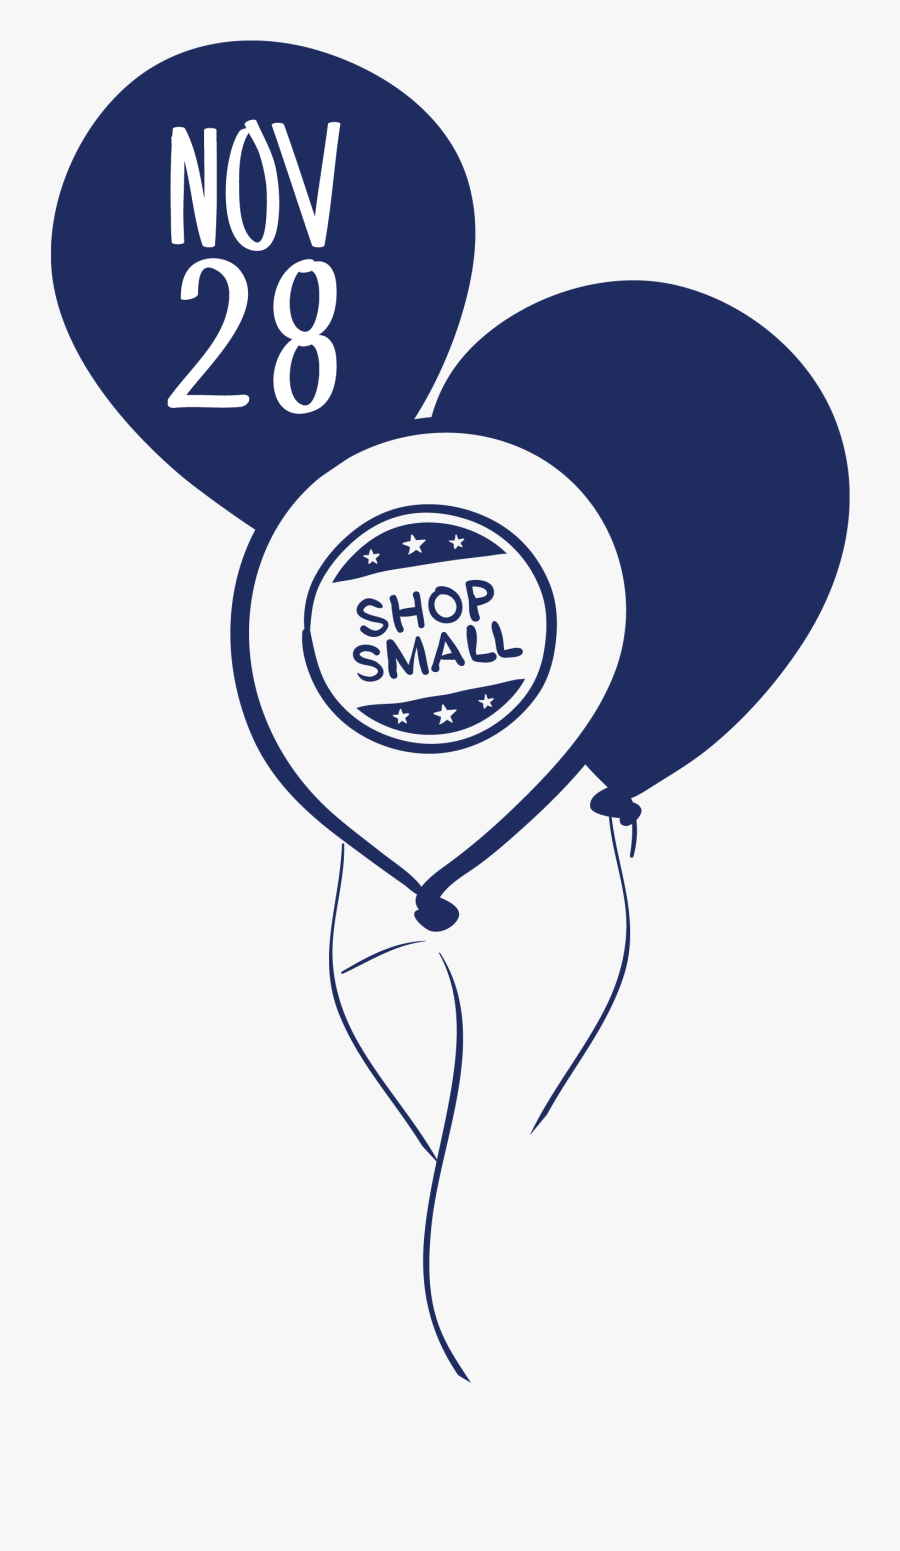 28, Shop Small - Shop Small, Transparent Clipart